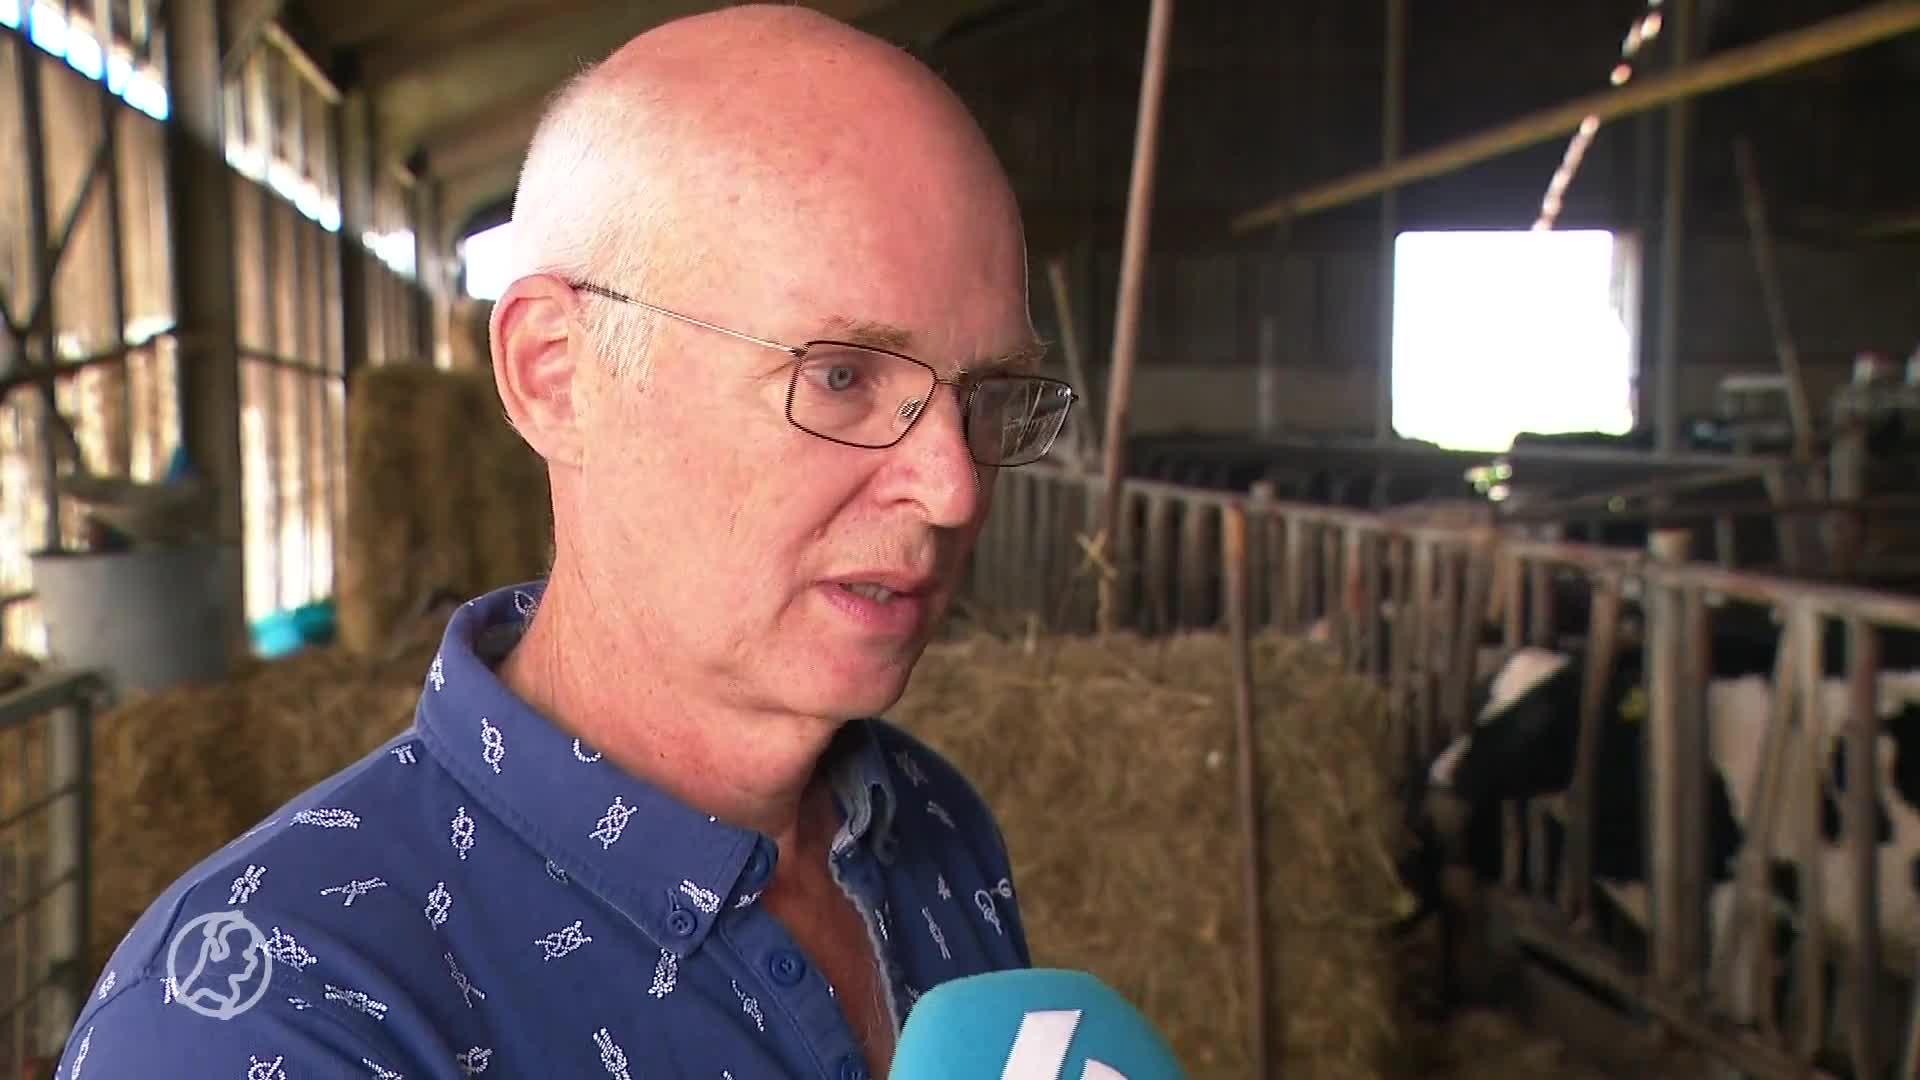 Boer Peter heeft schade aan mestkelder door aardbevingen, maar overheid wil nieuwe stal niet betalen